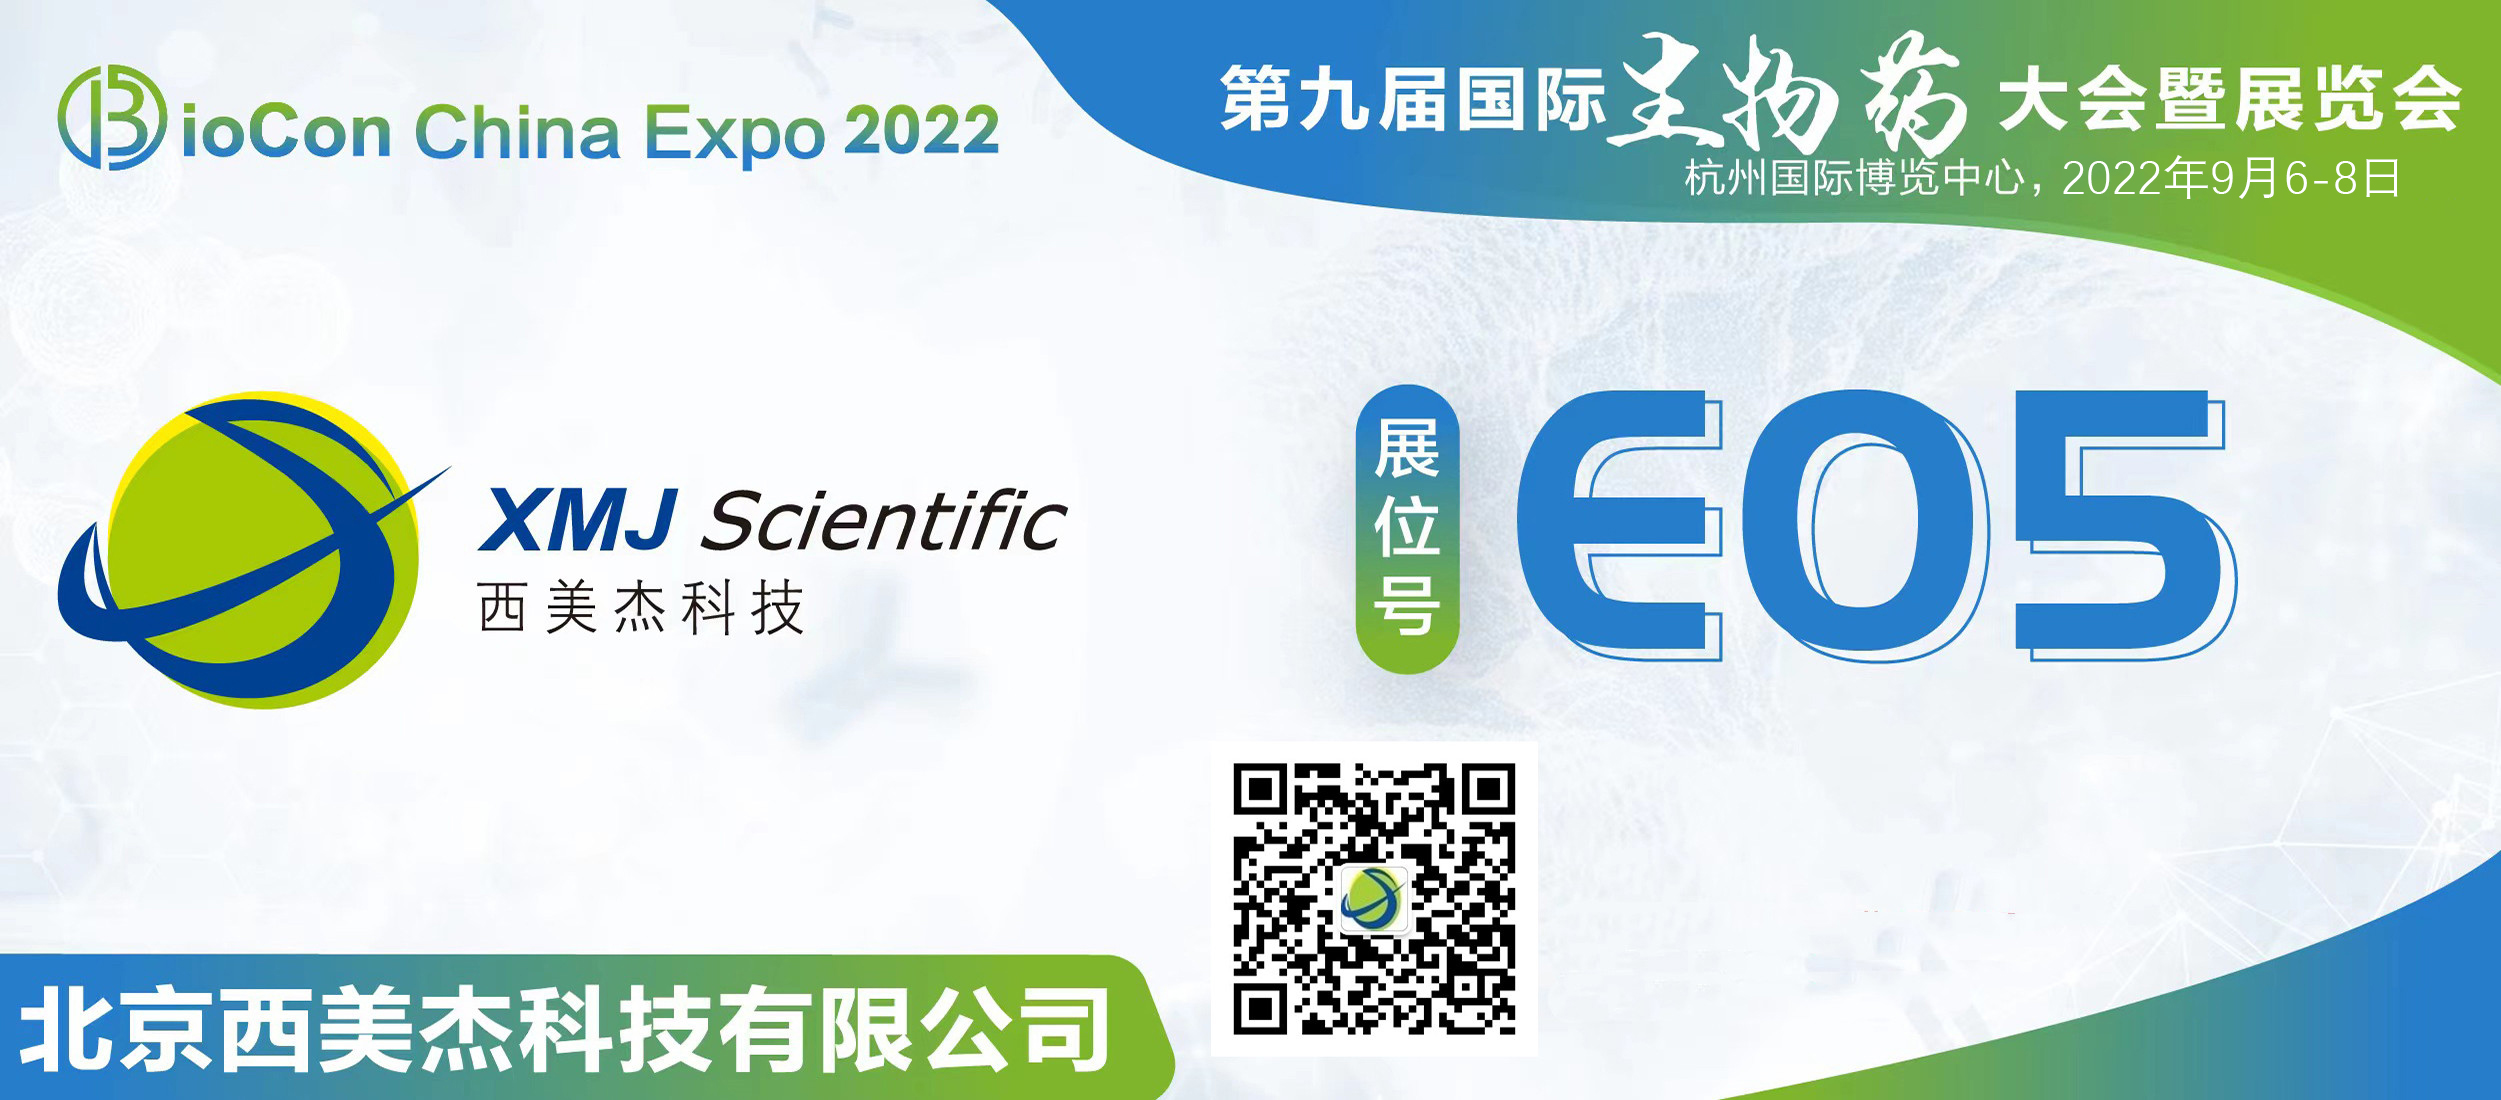 dafabetcasinoonline苹果手机网页版登录邀您参加第九届国际生物药大会暨展览会BioCon Expo 2022